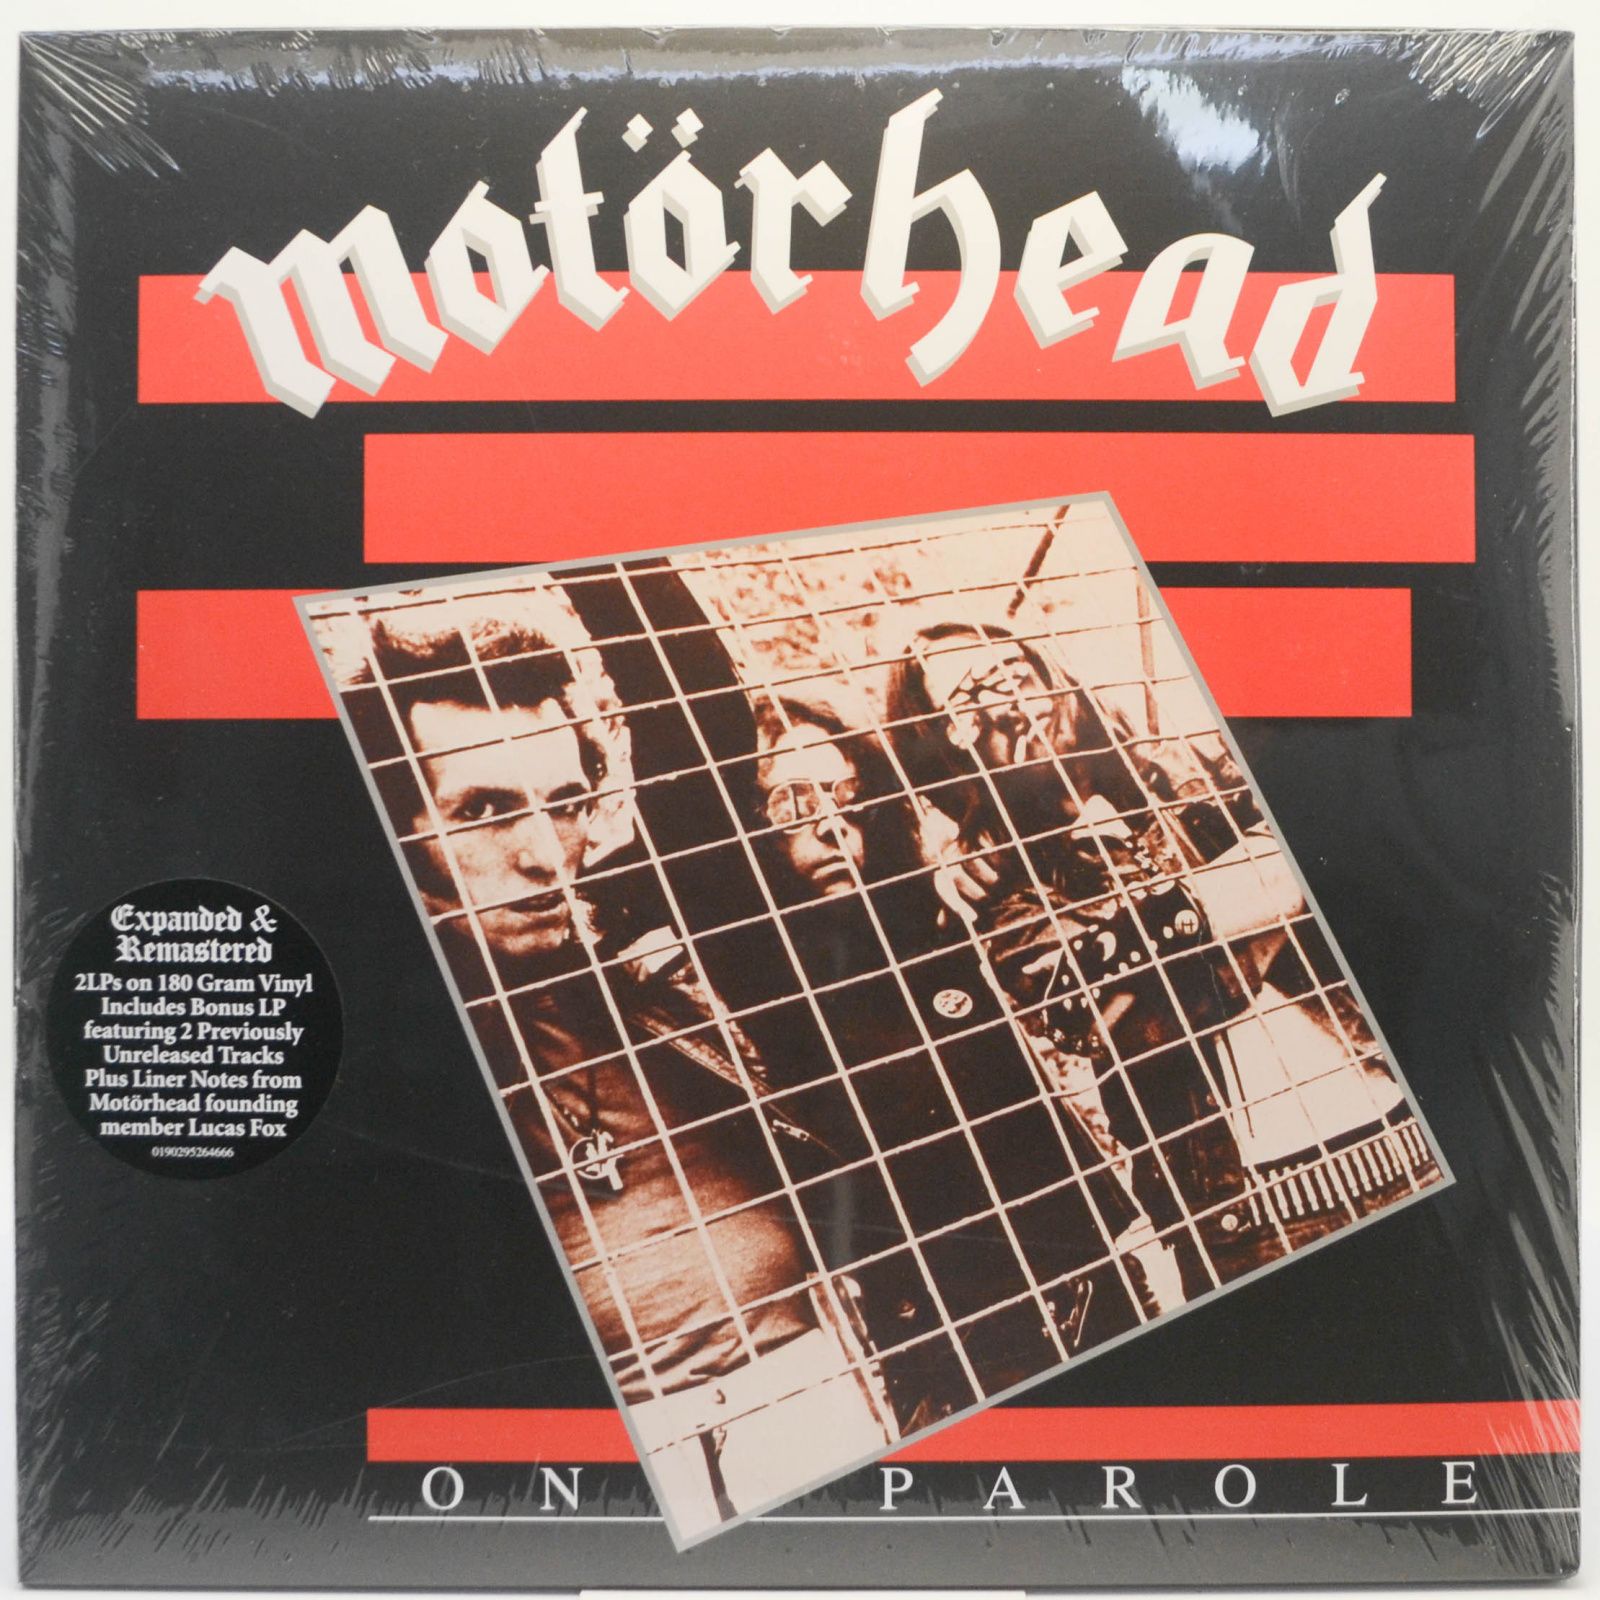 Motörhead — On Parole (2LP), 2020